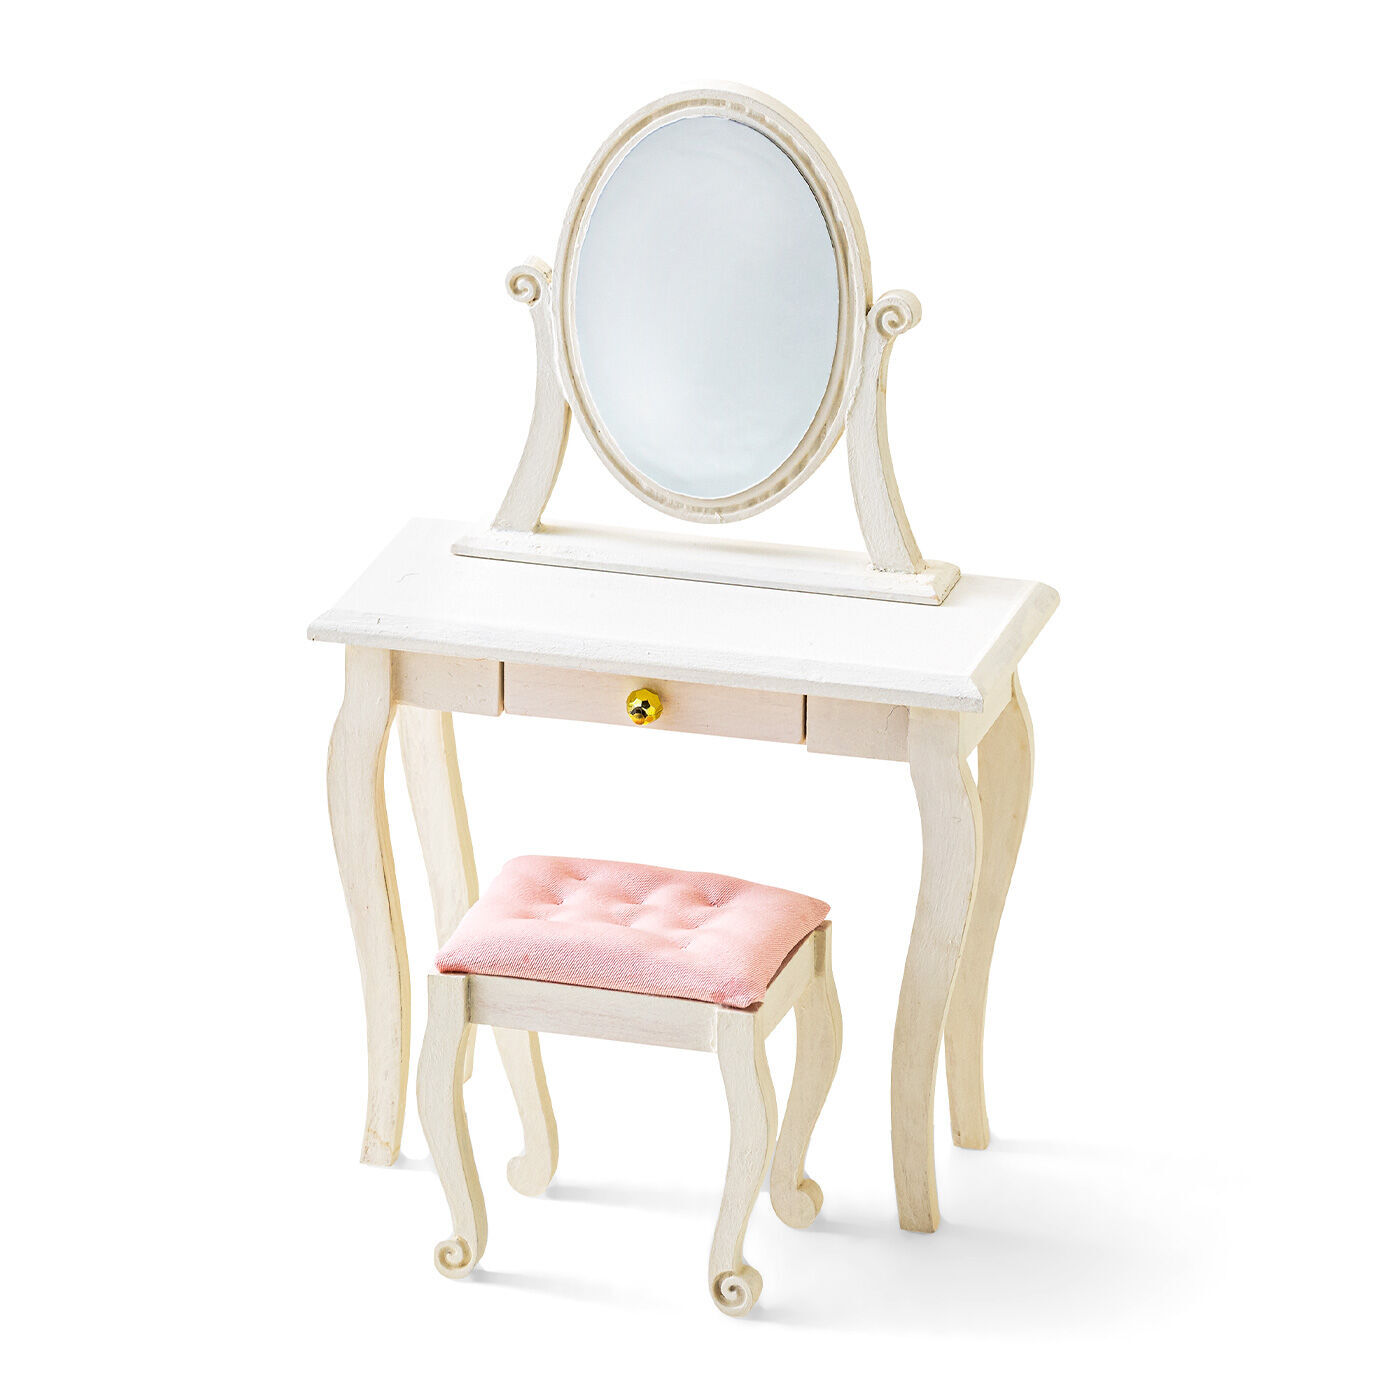 クチュリエ|ロマンティックな雰囲気をまとったミニチュア家具キット ～ドレッサー～|机、椅子、置き鏡の3点は、セットでもセパレートでも設置可能。